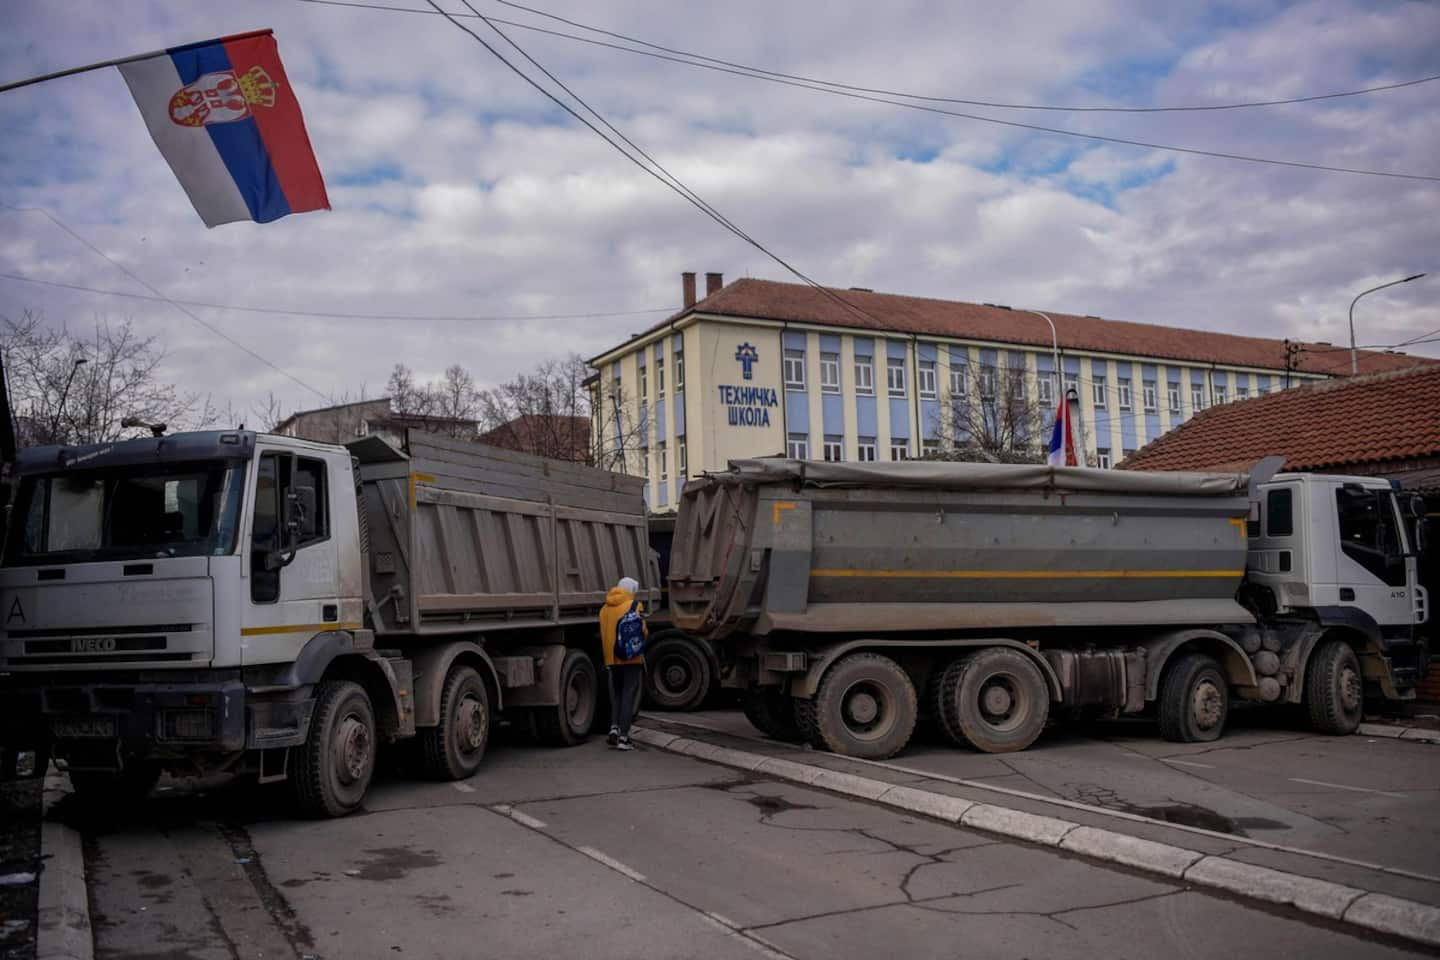 The Kosovo Serbs will begin to raise their barricades